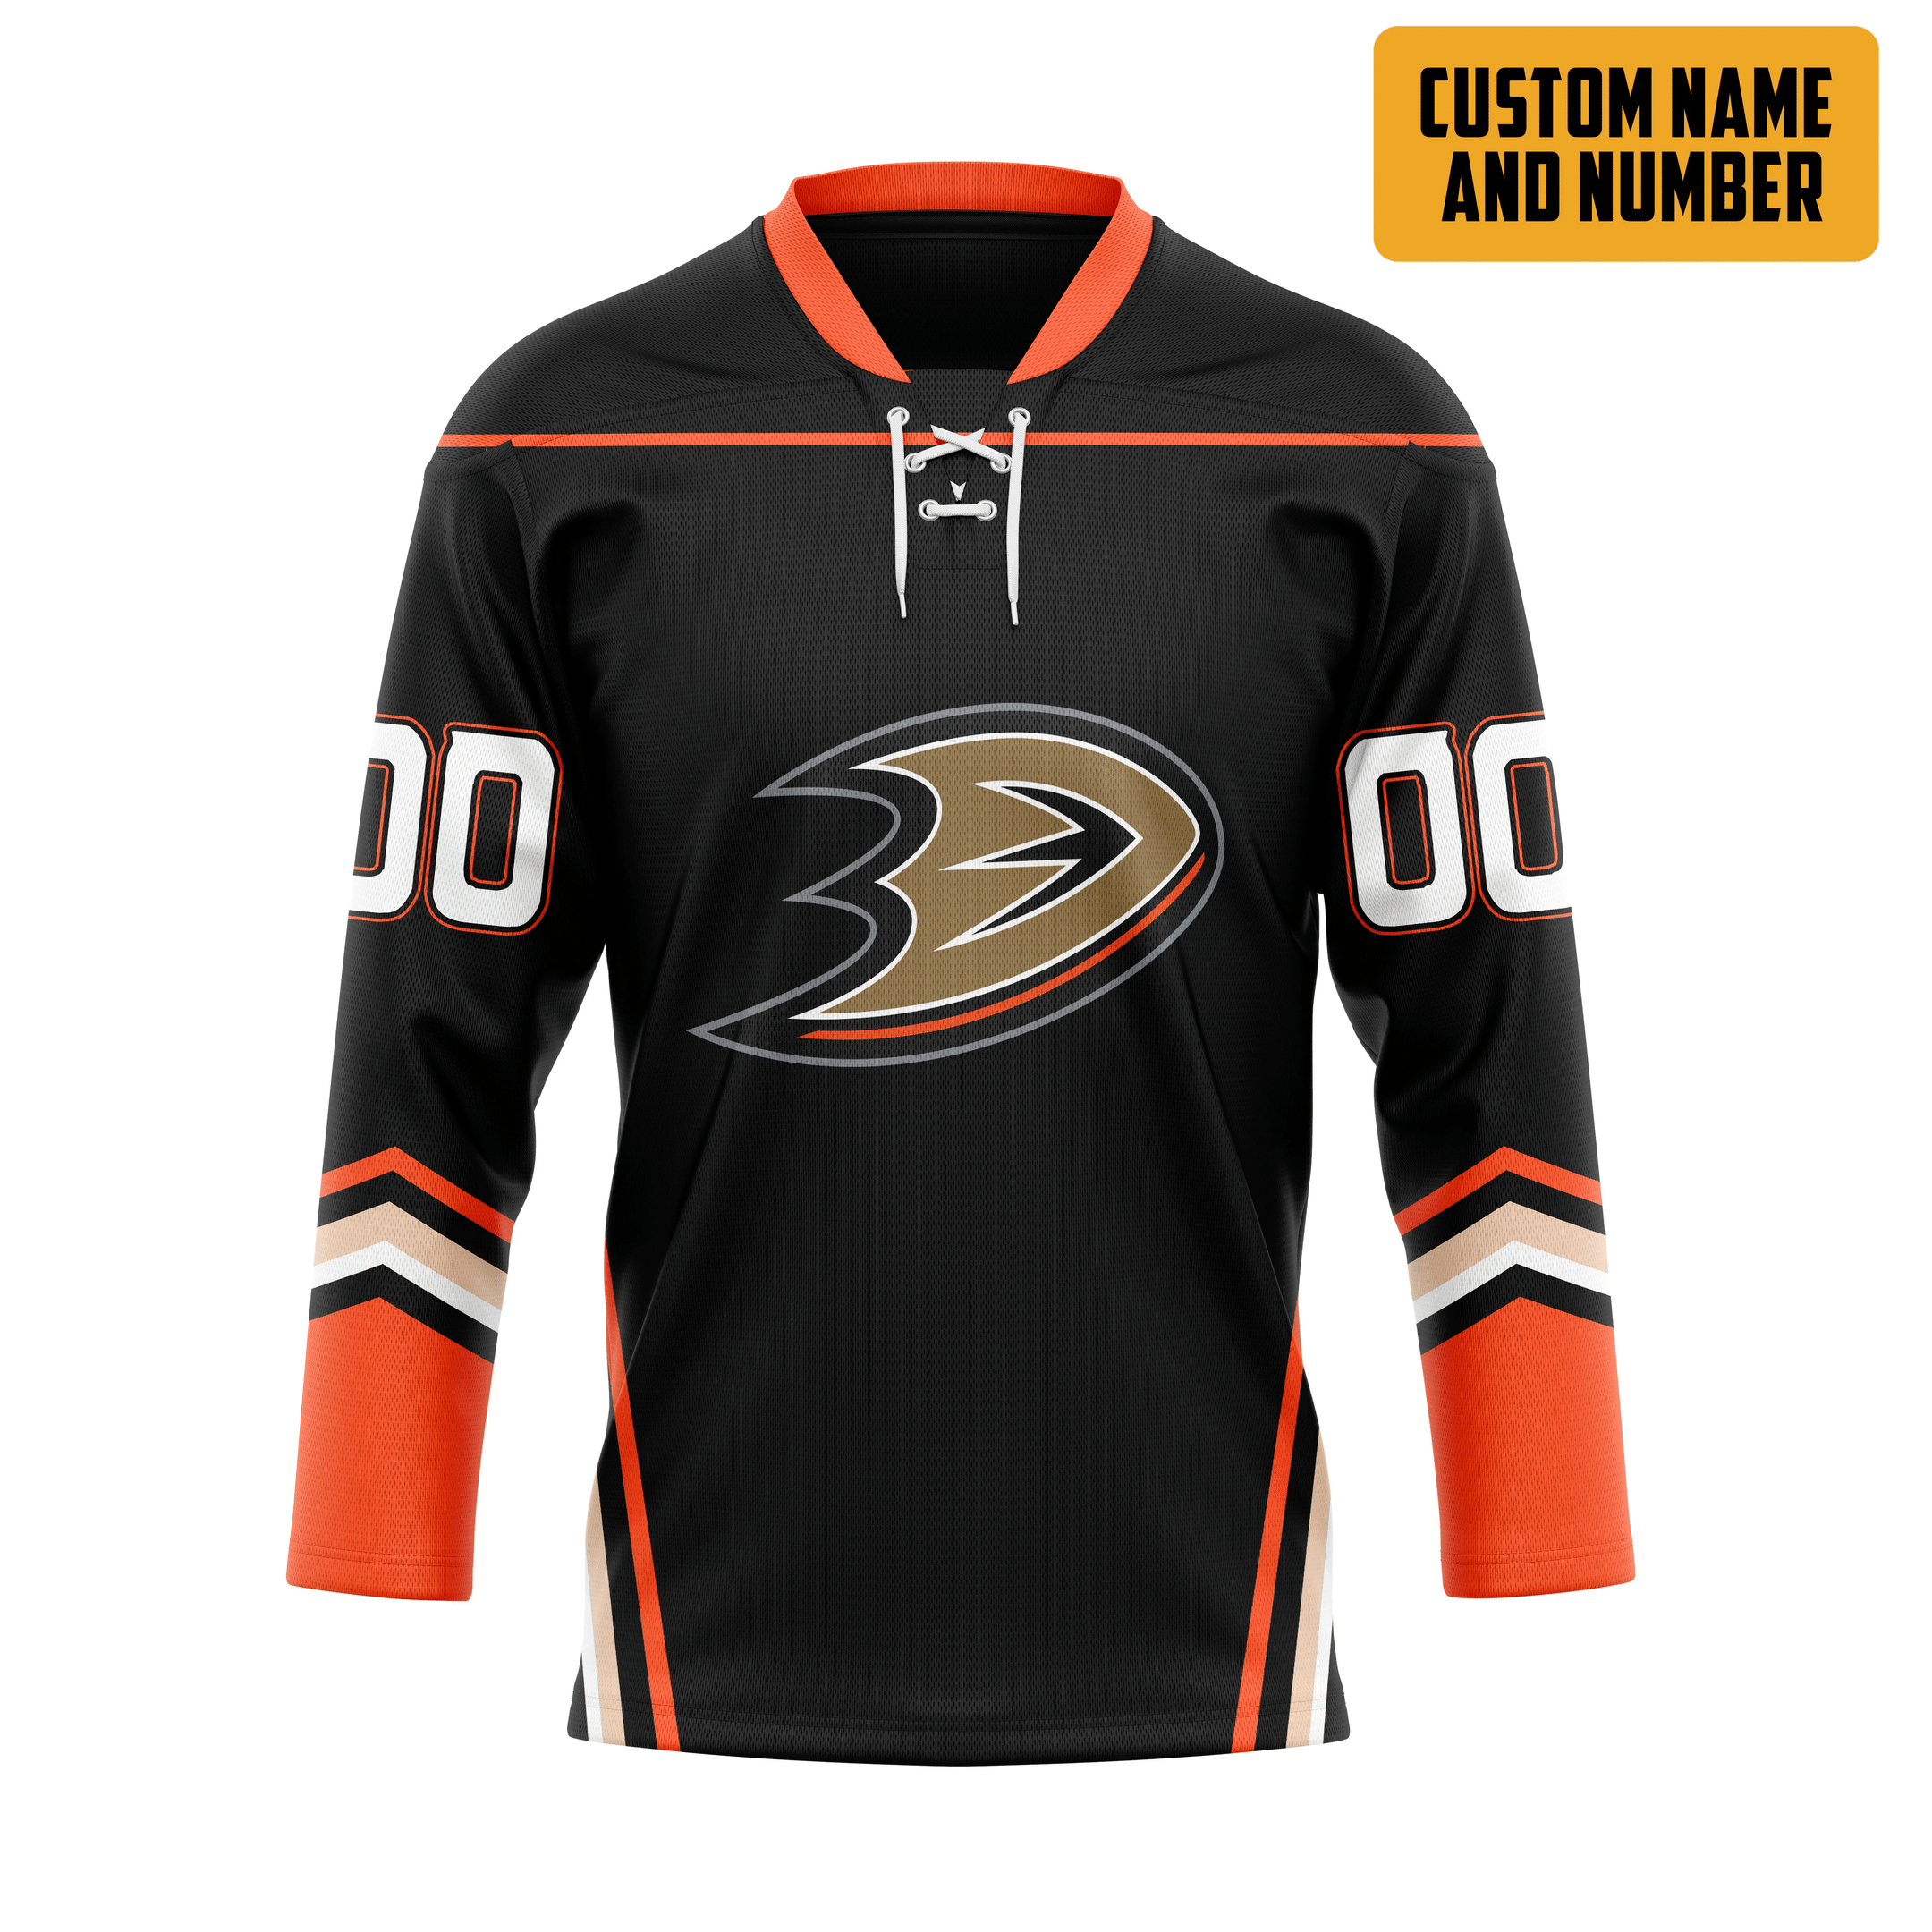 It's only $50 so don't miss out - Be sure to pick up a new hockey shirt today! 325